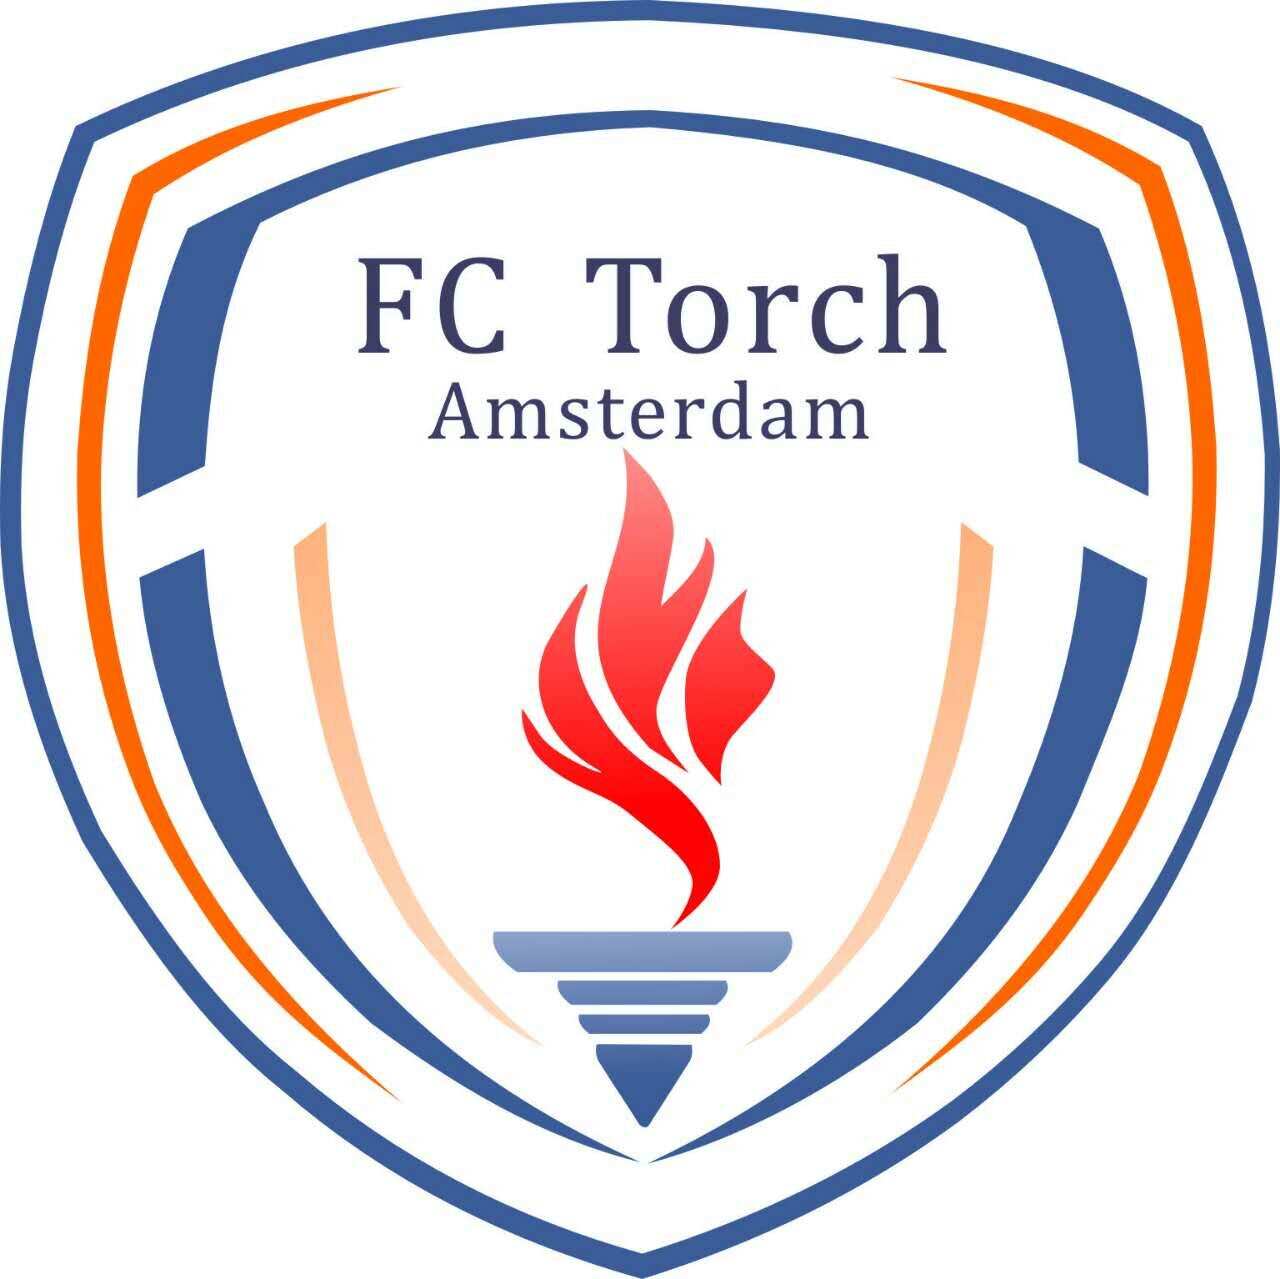 FC Torch Amsterdam.jpg